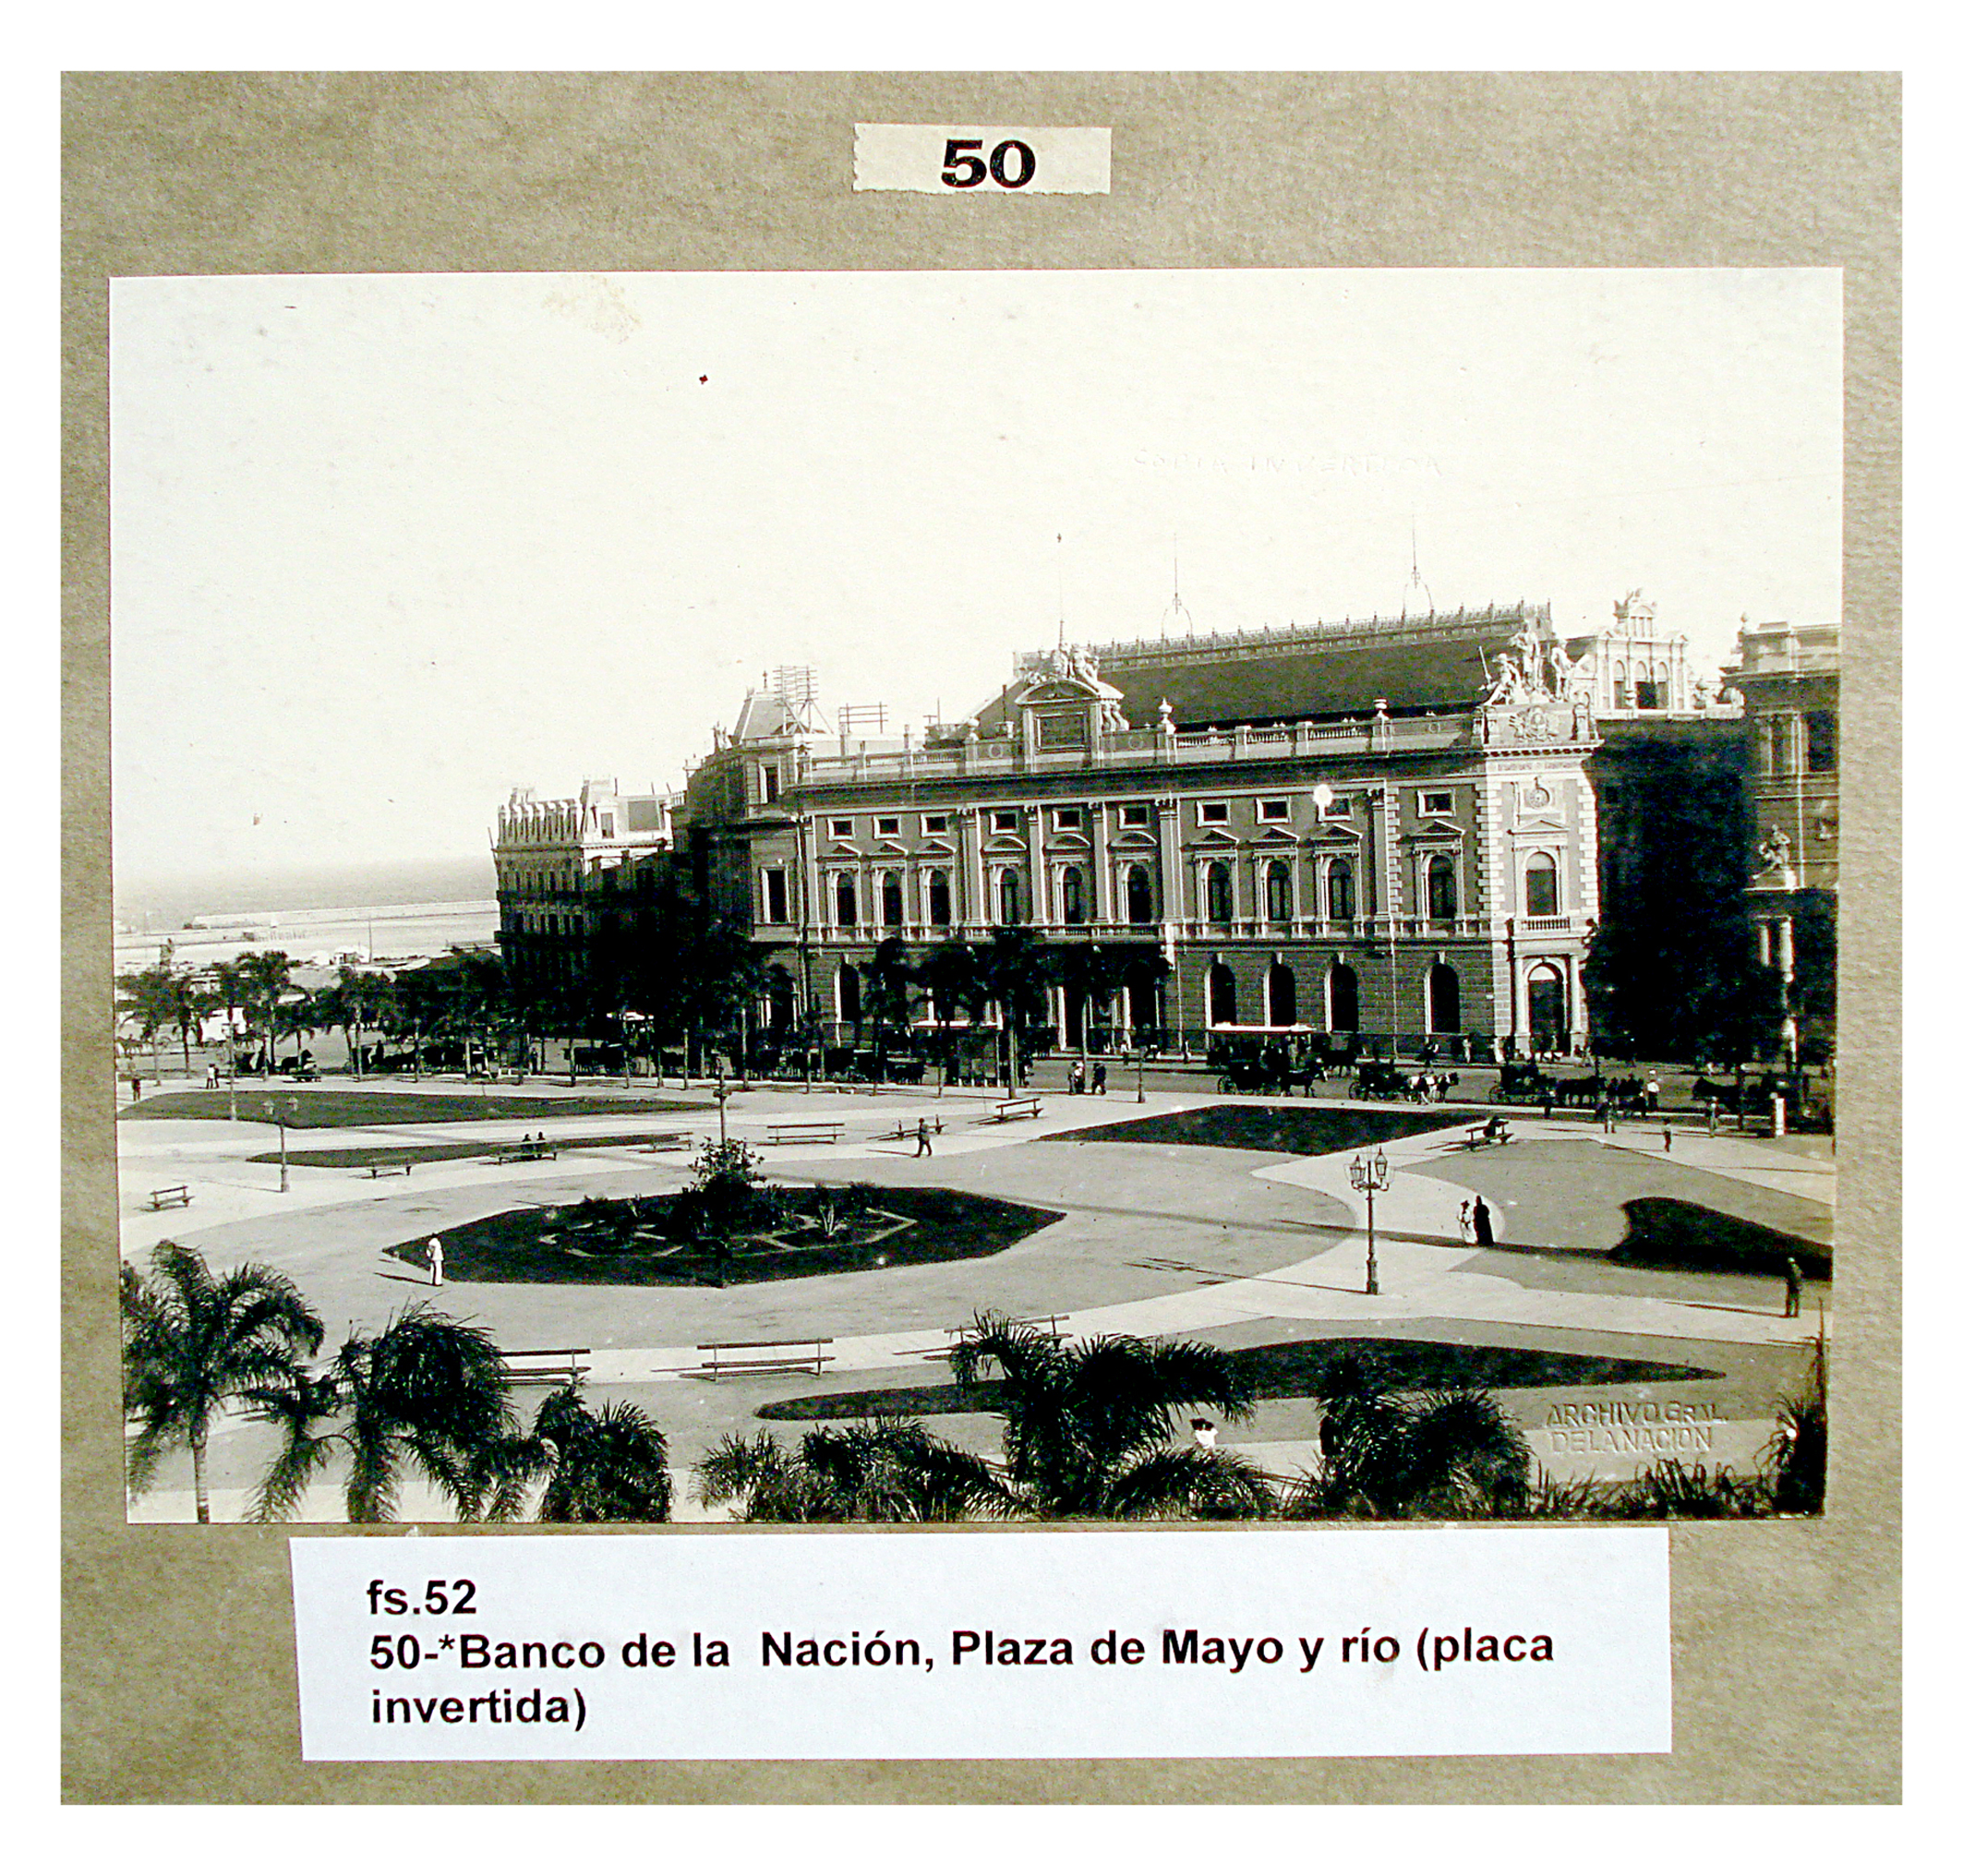 Banco de la Nación, Plaza de Mayo y río